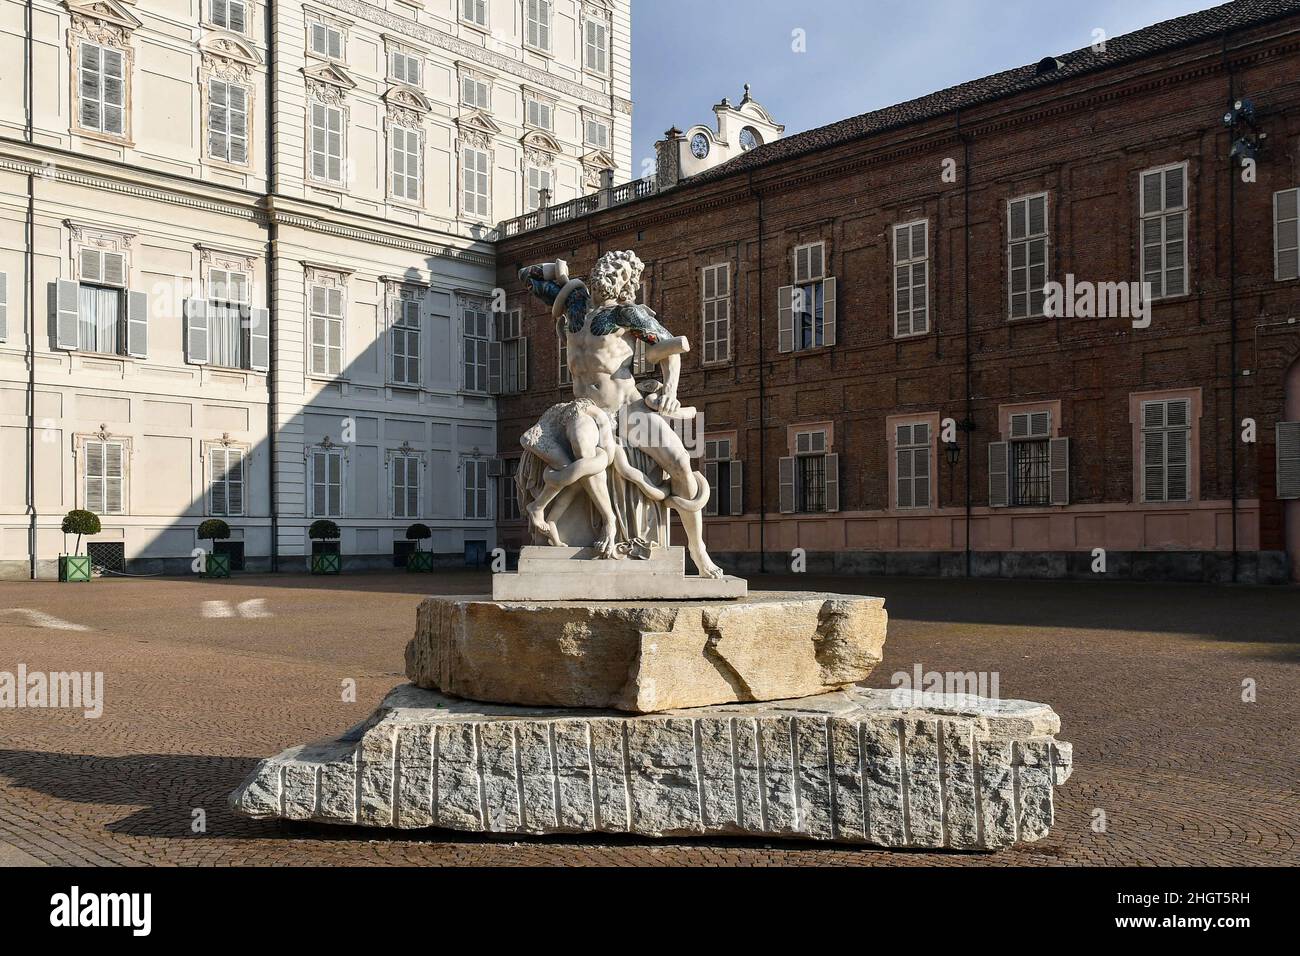 Statue de 'Laocoonte' à embout taté (2020) par l'artiste Fabio Viale devant le Palazzo Reale lors de l'exposition 'In Between', Turin, Piémont, Italie Banque D'Images